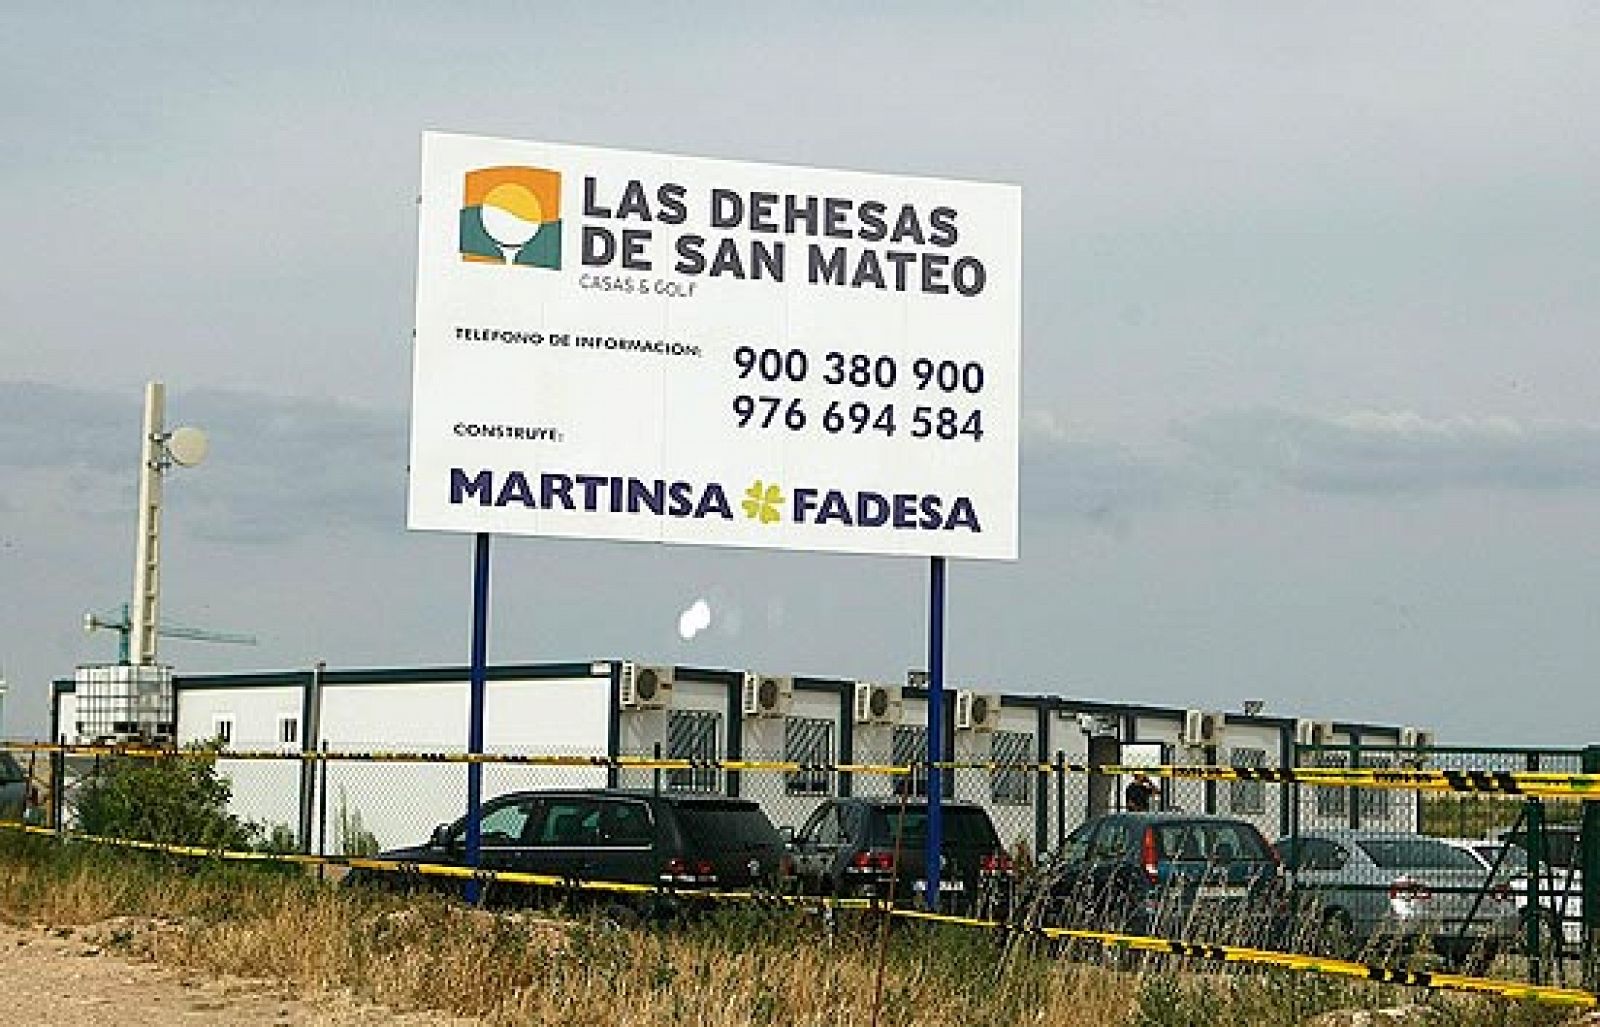 2008 - Martinsa-Fadesa y el pinchazo inmobiliario